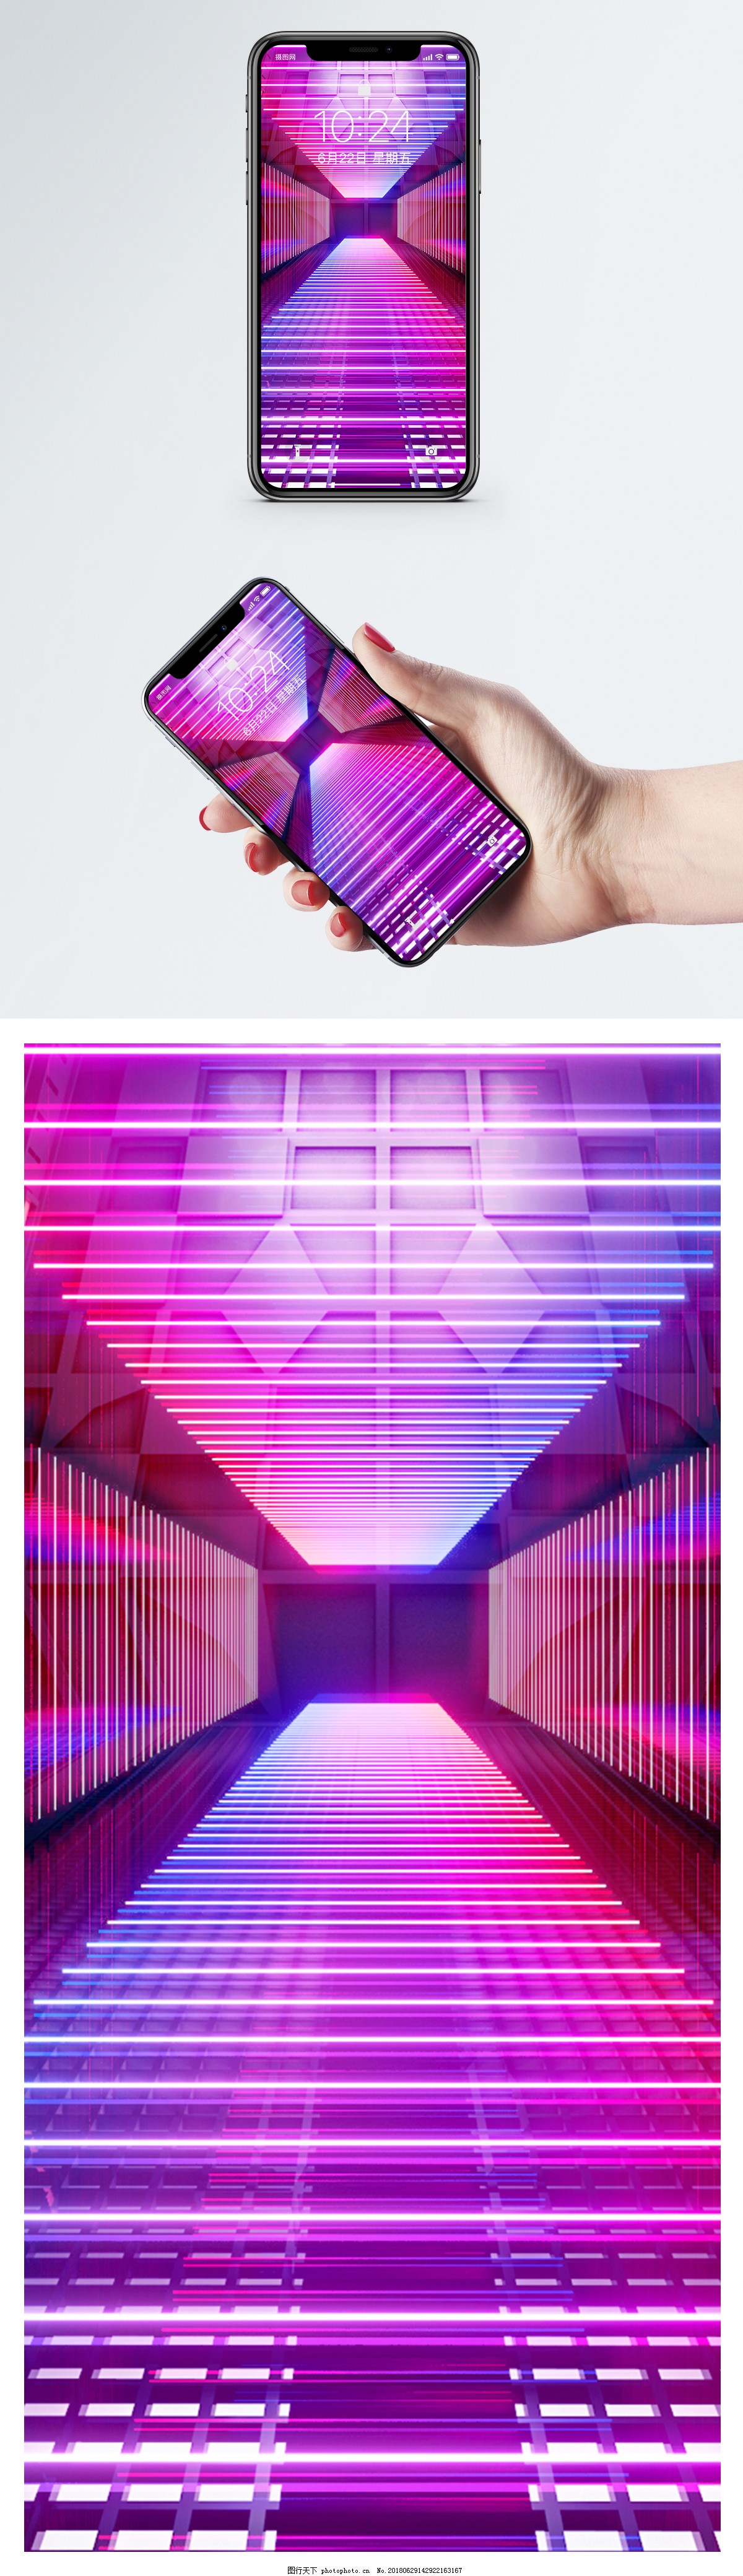 霓虹场景手机壁纸图片 壁纸配图 壁纸配图 图行天下素材网